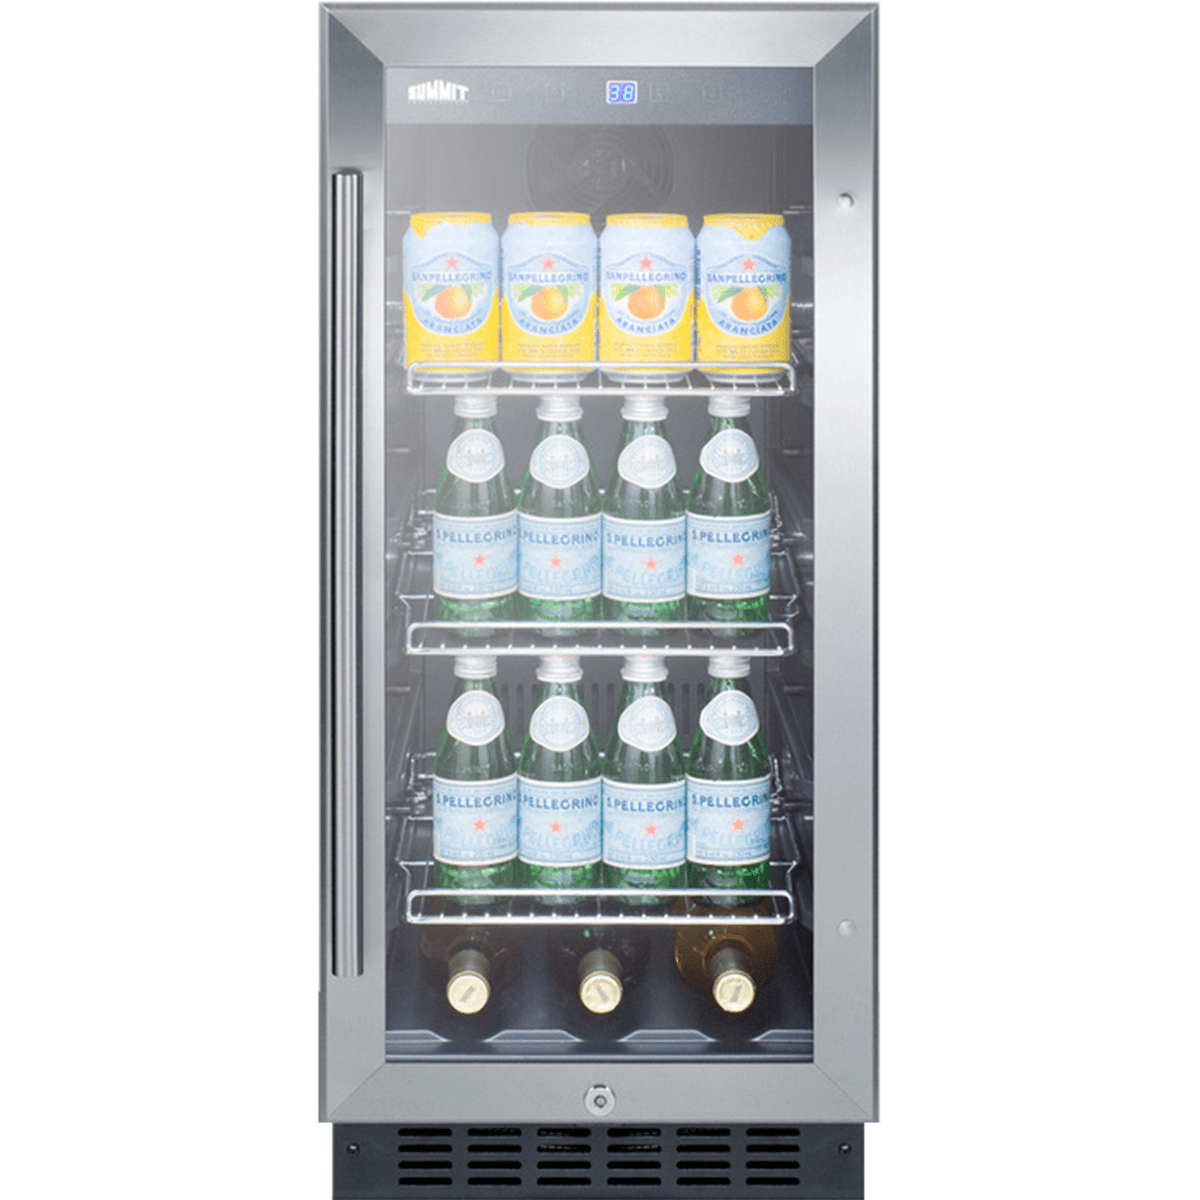 SUMMIT 60 Can Built-In Glass Door Beverage Cooler (SCR1536BG)